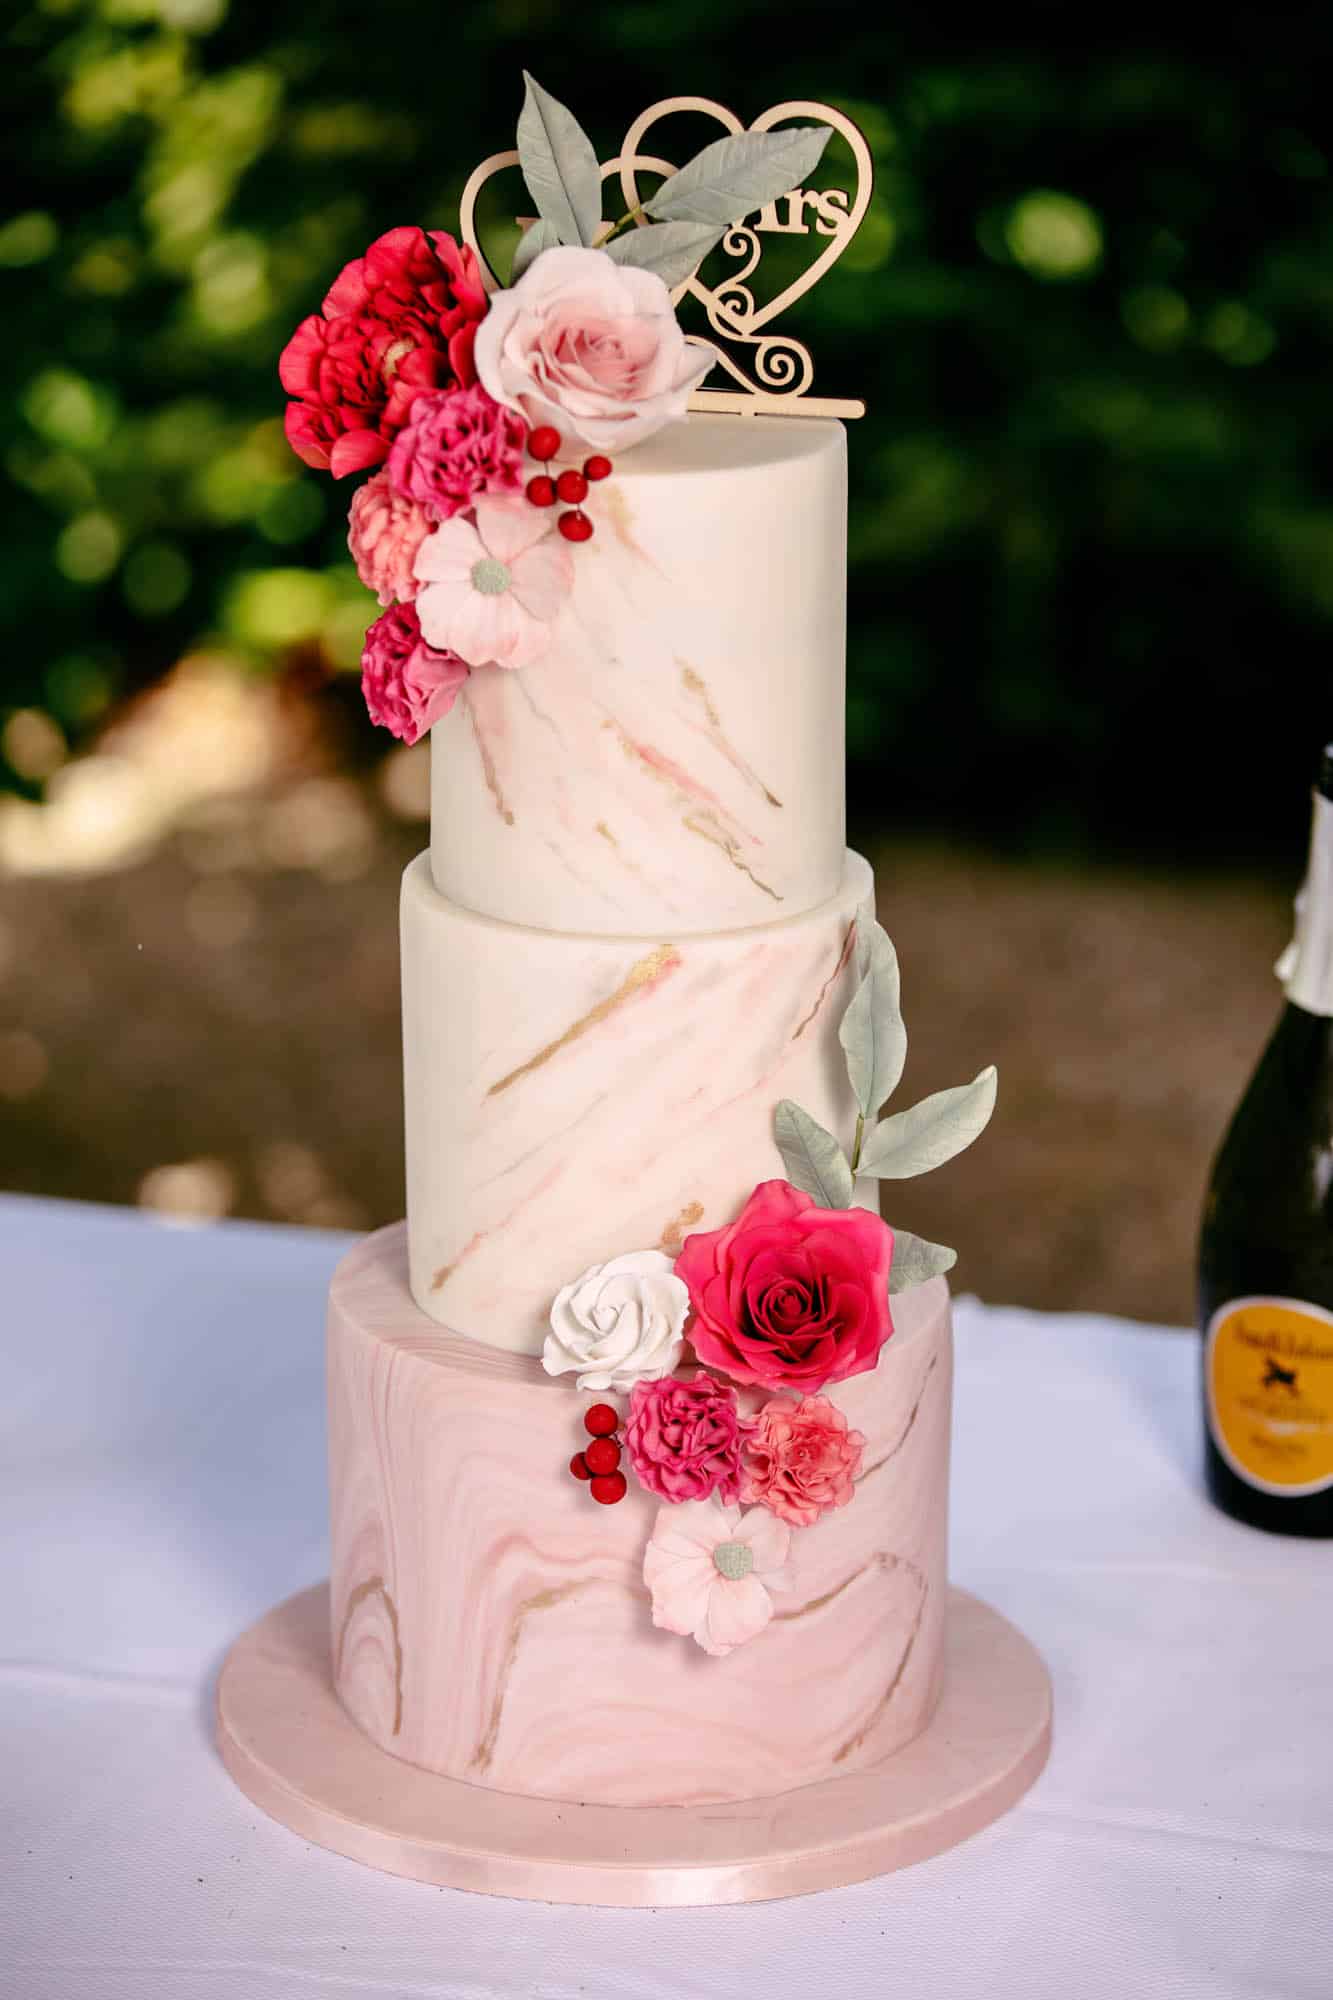 Een prachtig gedecoreerde bruidstaart met drie lagen en roze bloemen erop, perfect voor bruidstaarten.